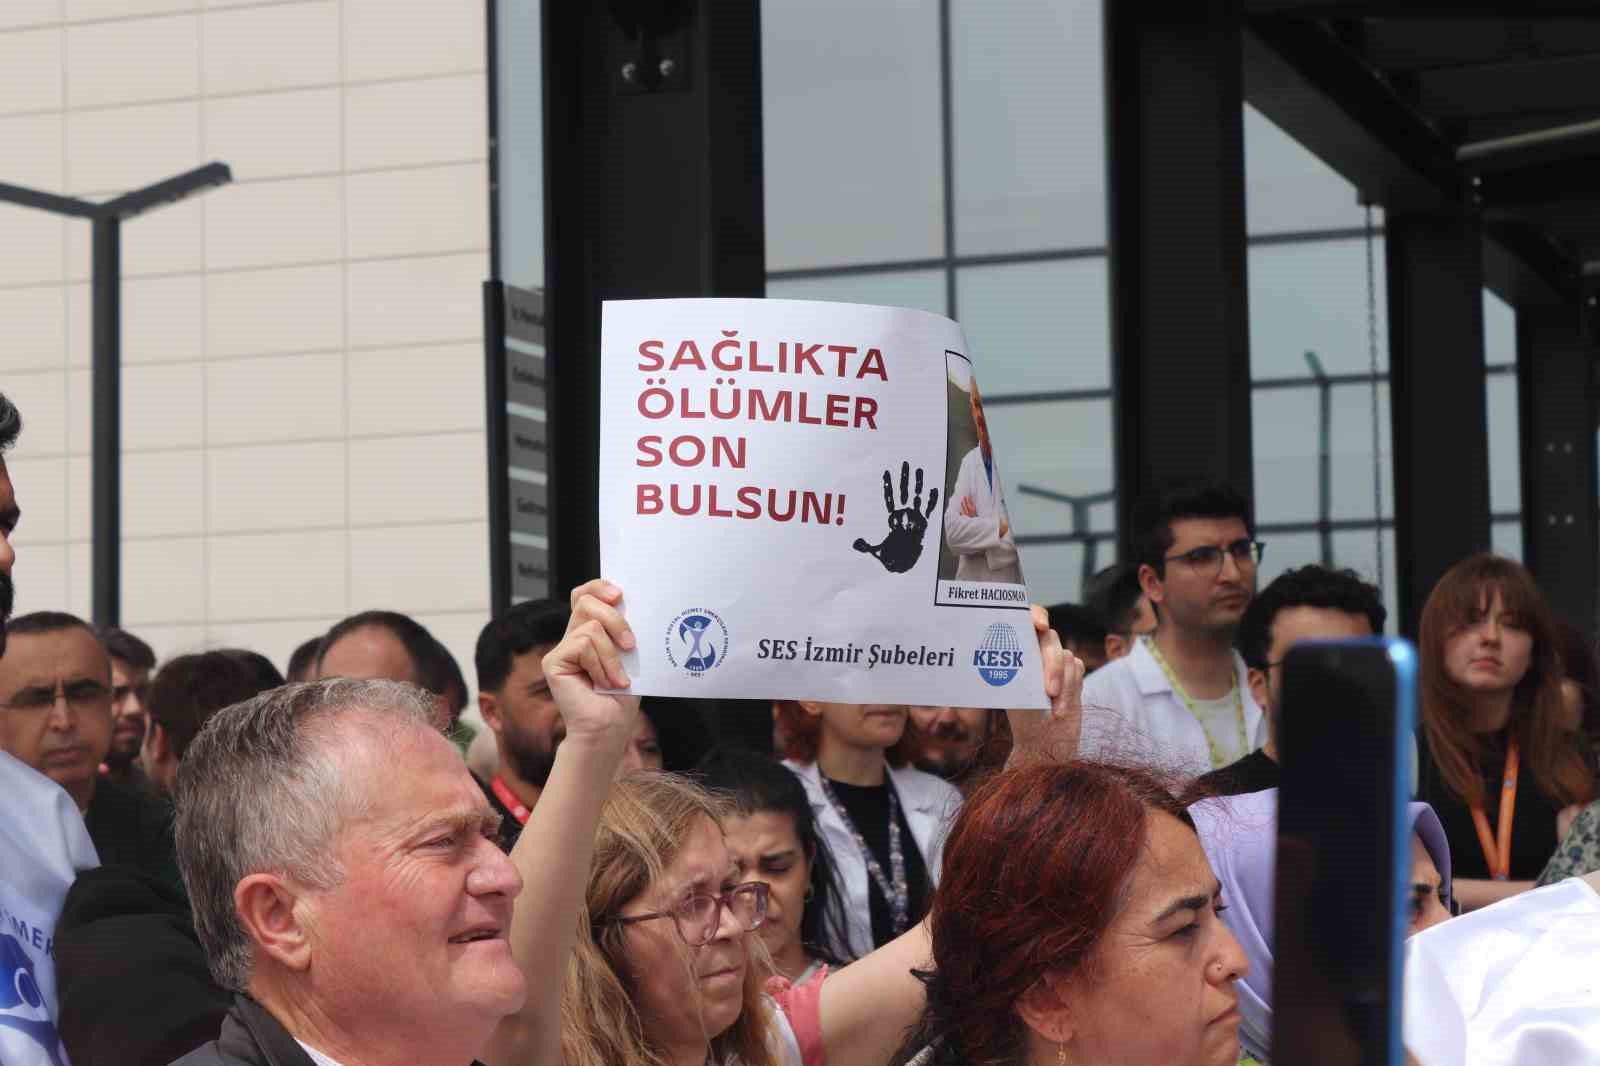 İzmir’de sağlık çalışanlarına şiddette meslektaşlarından tepki
